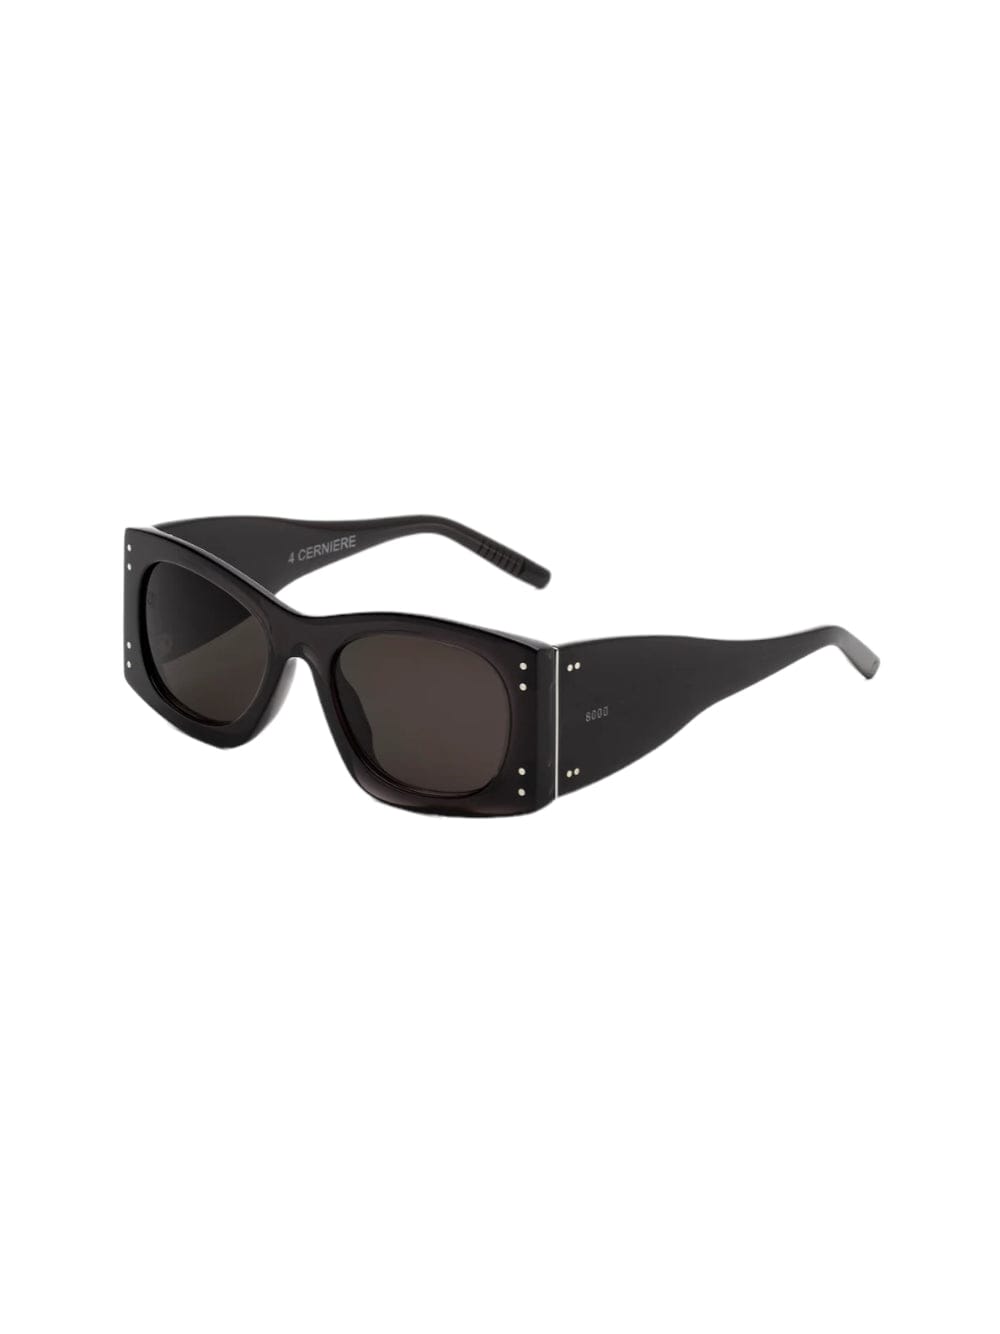 Retrosuperfuture 4 Cerniere - Limited Edition - Black Sunglasses